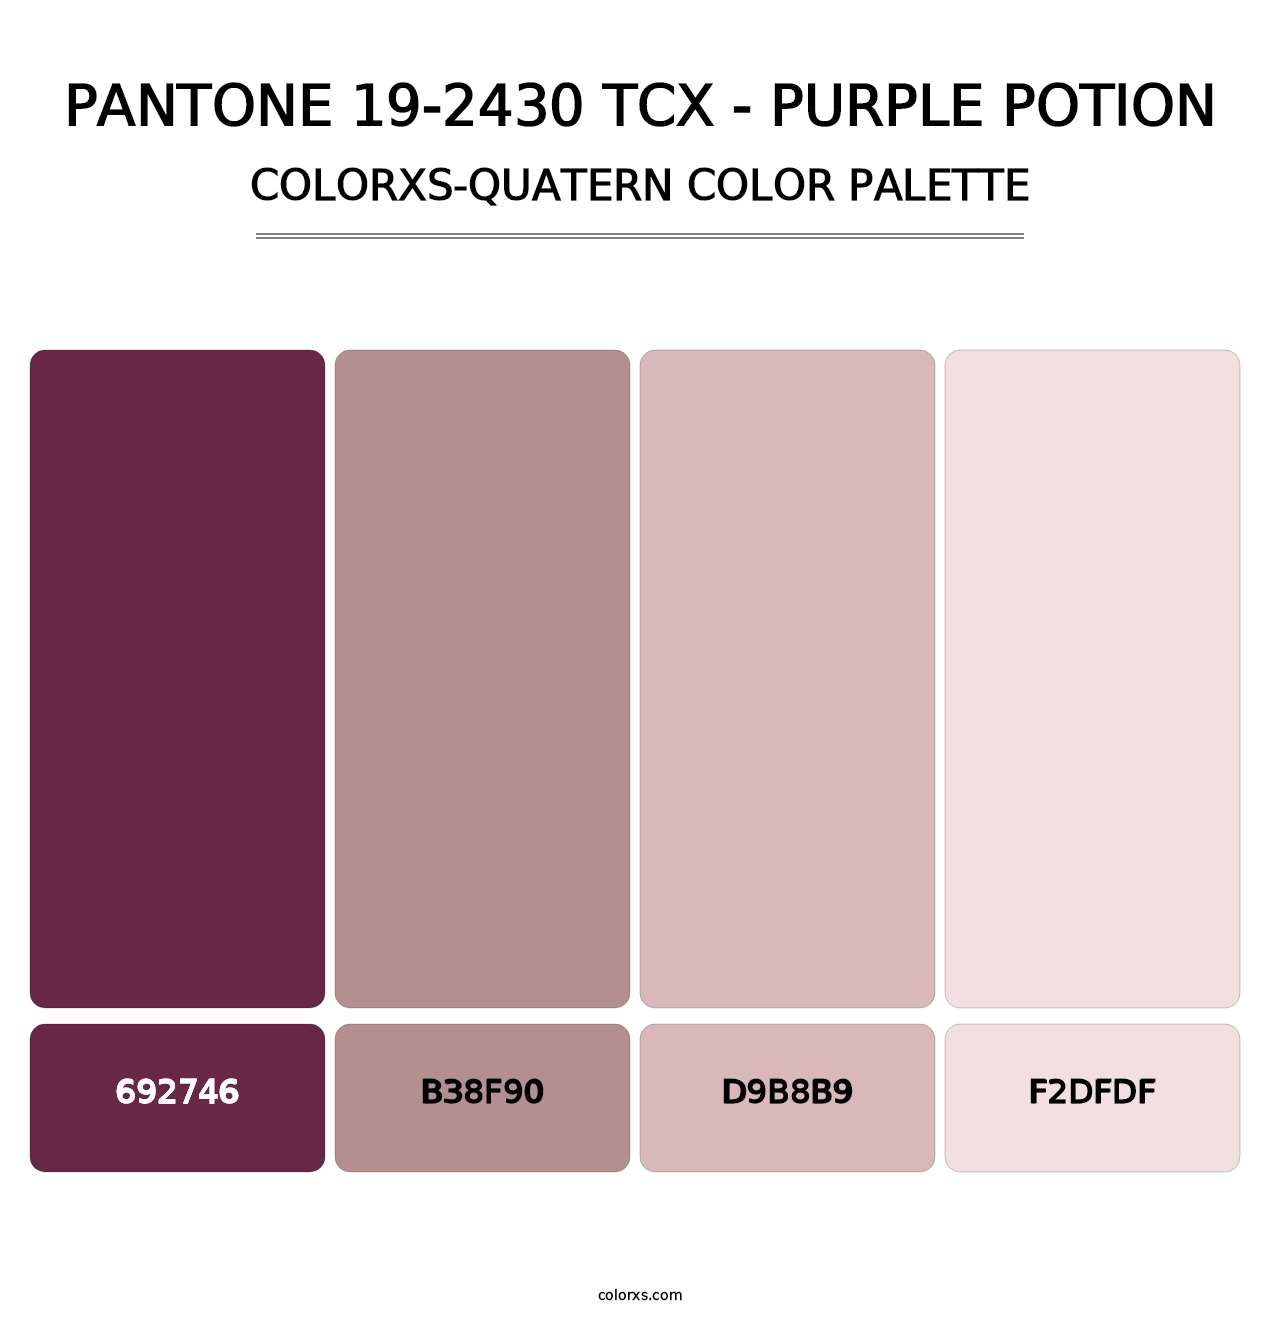 PANTONE 19-2430 TCX - Purple Potion - Colorxs Quatern Palette